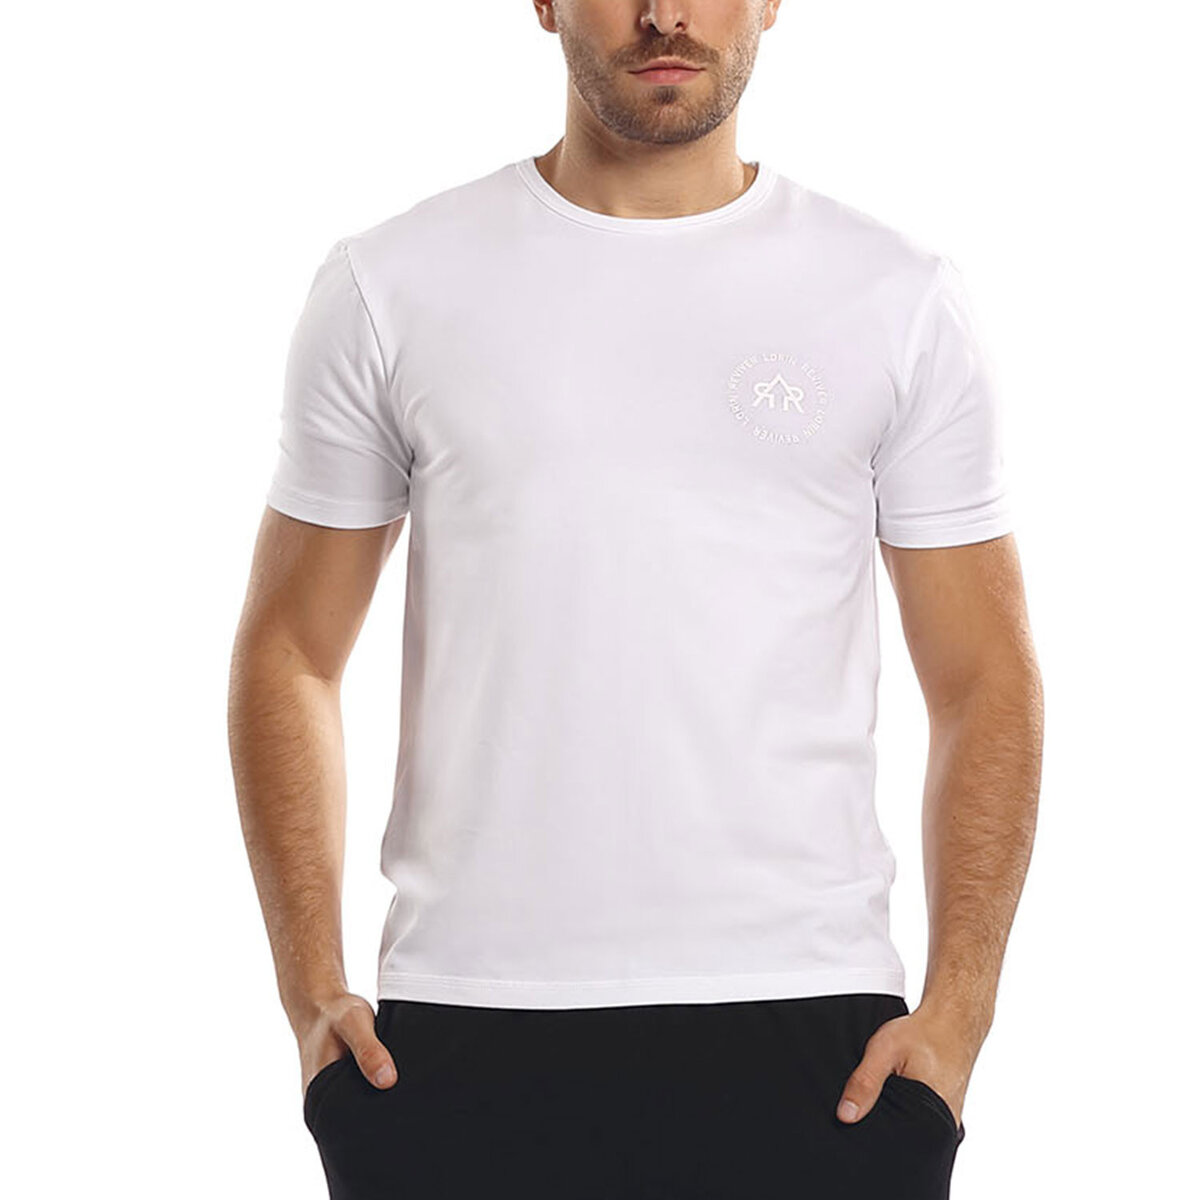 Bílé pánské tričko Reviver od značky Lorin, XL i510_41776449086